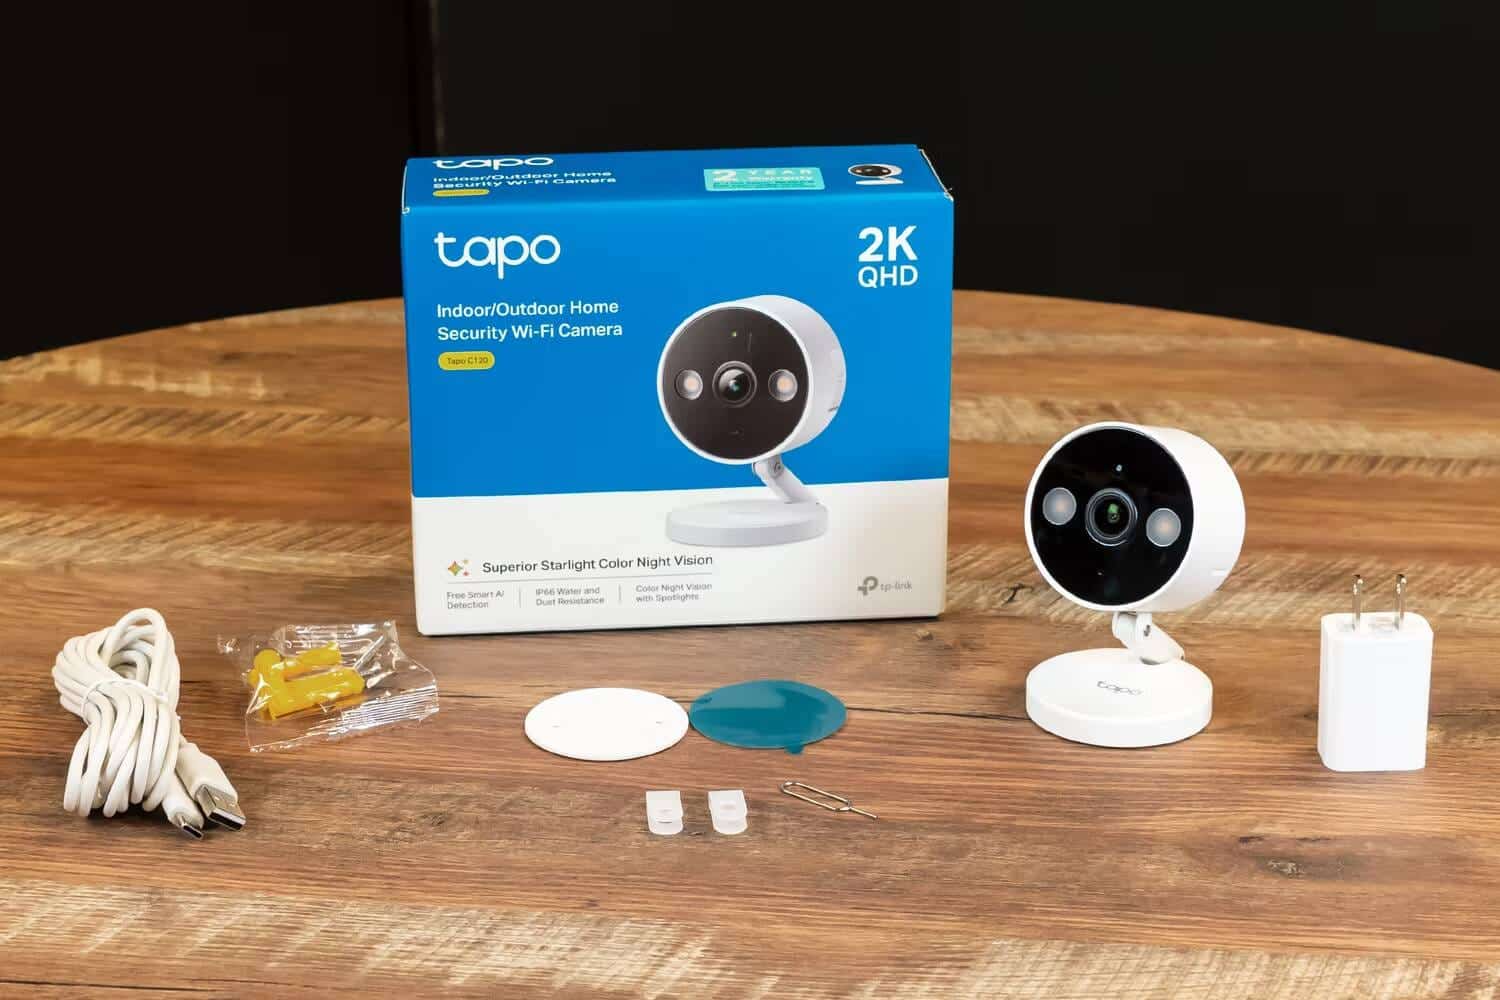 مُراجعة الكاميرا الذكية TP-Link Tapo C120: الحماية المُتقدمة والأداء الاستثنائي بتكلفة معقولة - مراجعات